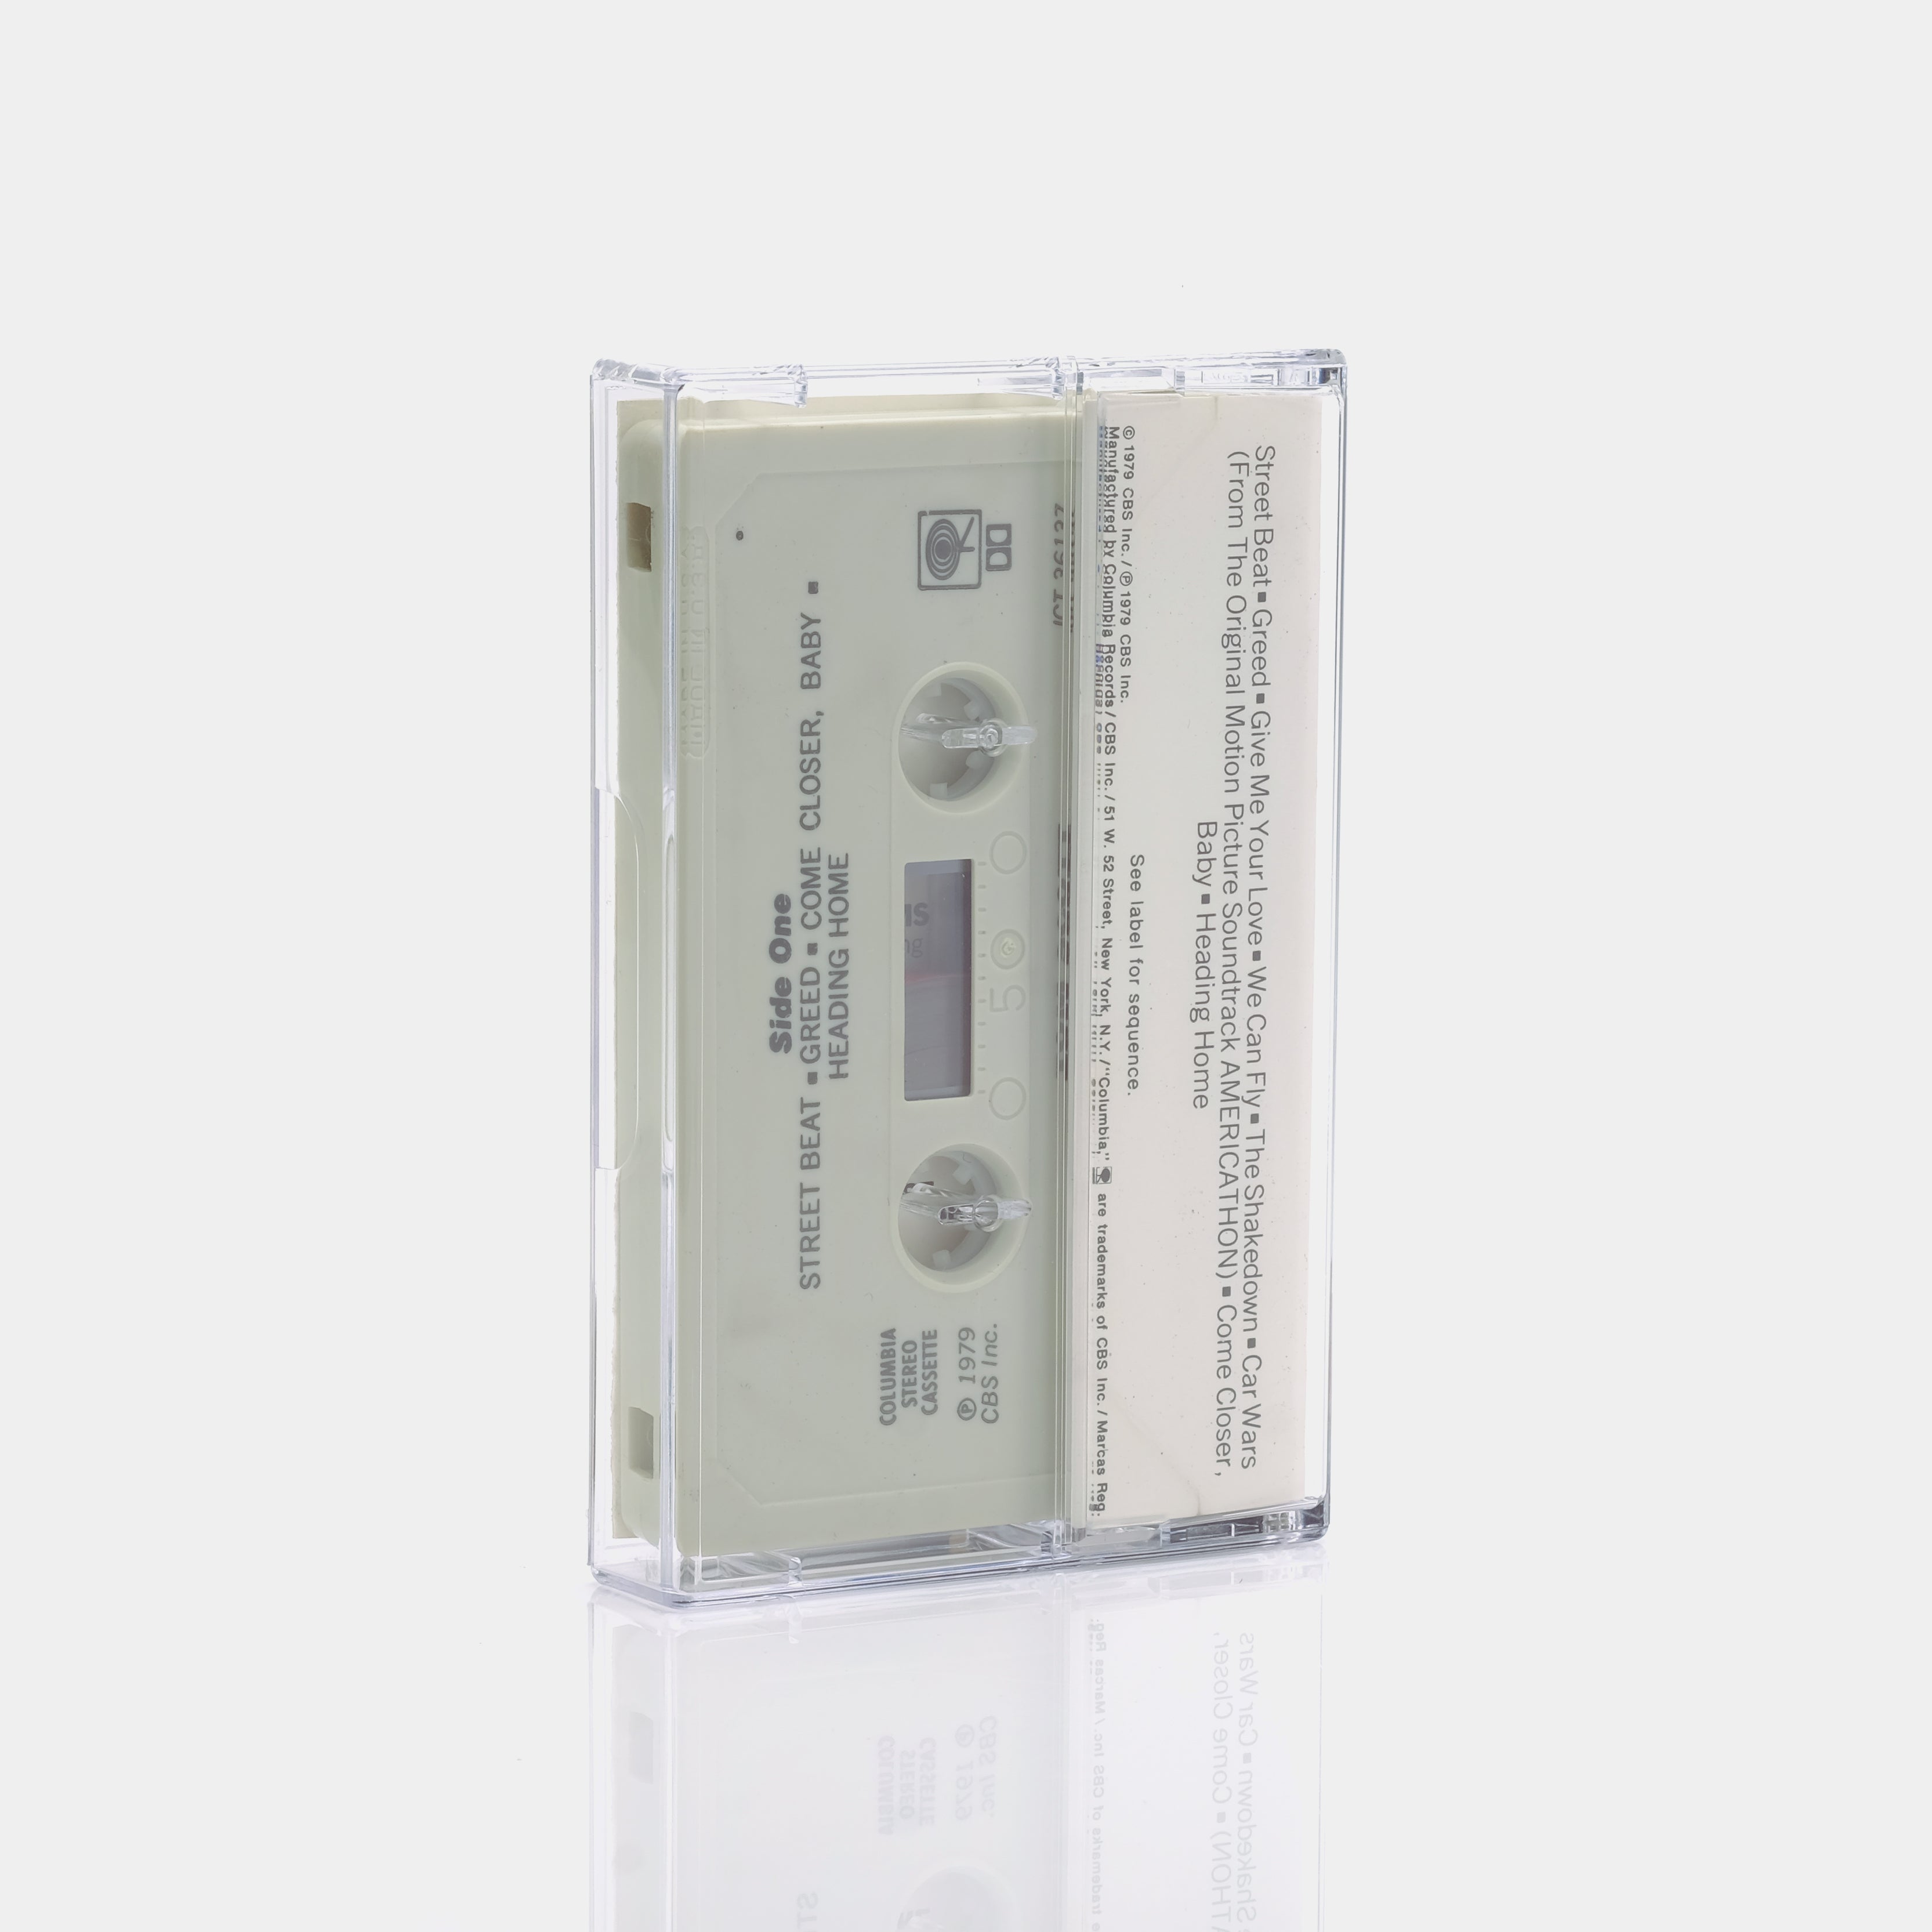 Joe Cocker - Greatest Hits Cassette Tape